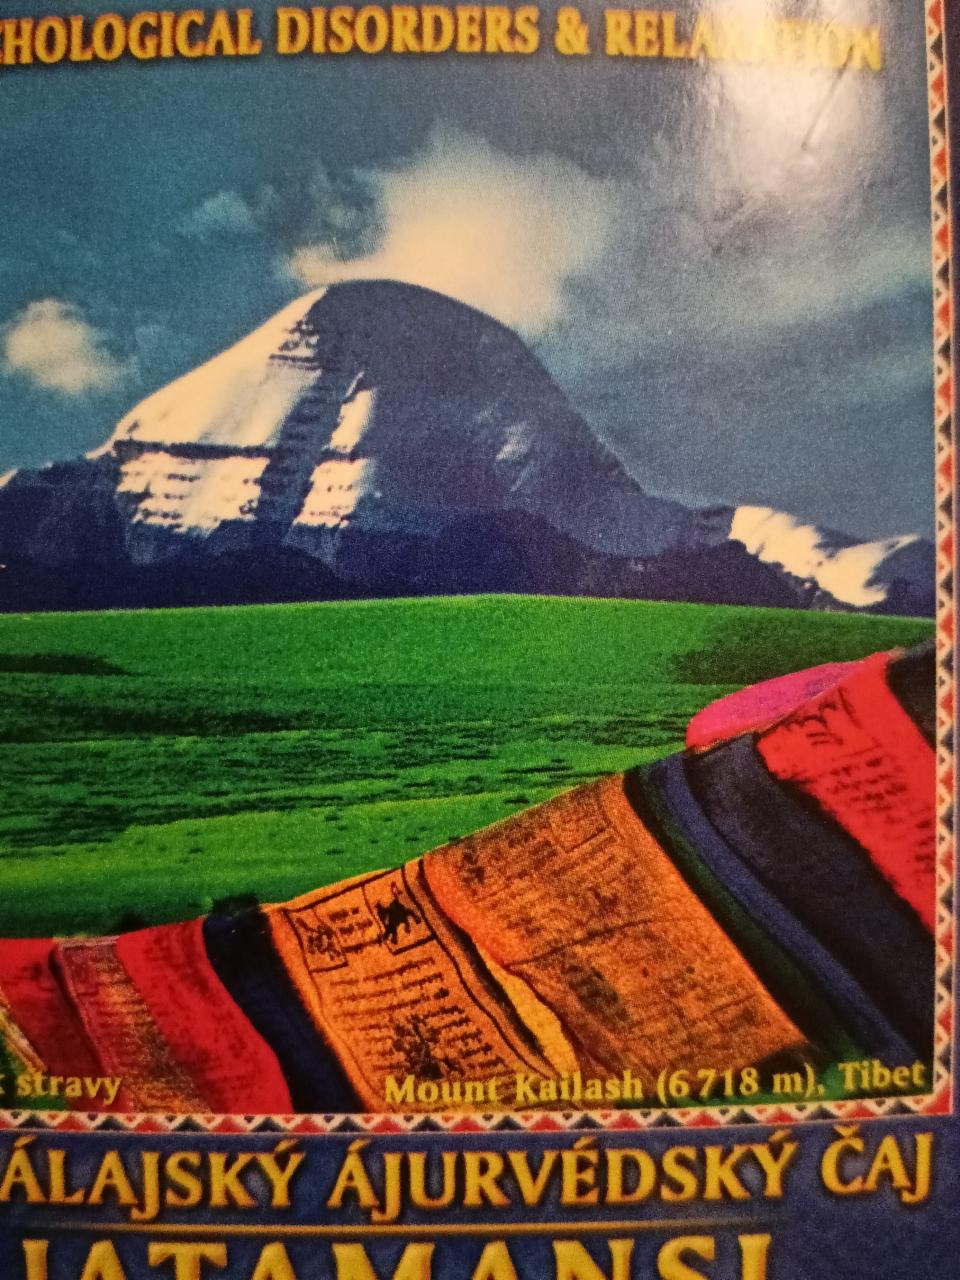 Fotografie - himalájský ájurvédský čaj jatamansi